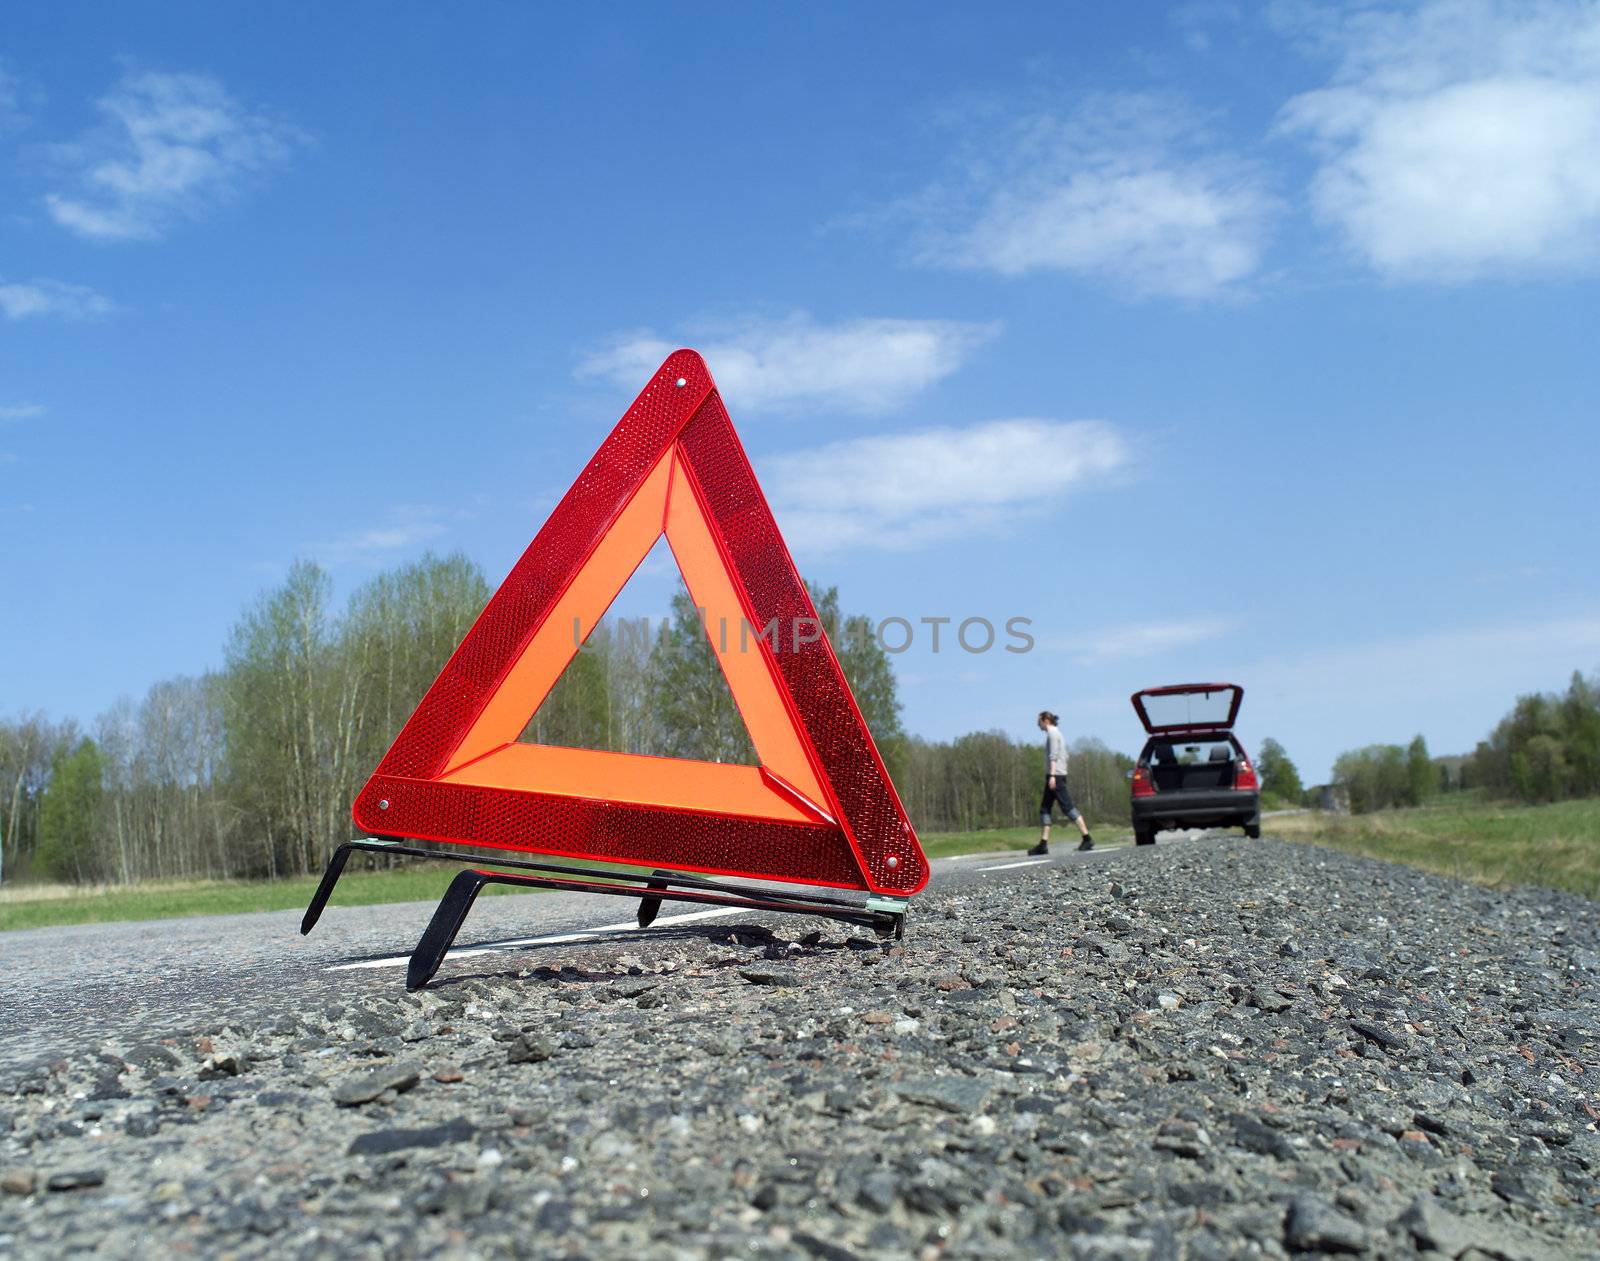 Warning Triangle by gemenacom